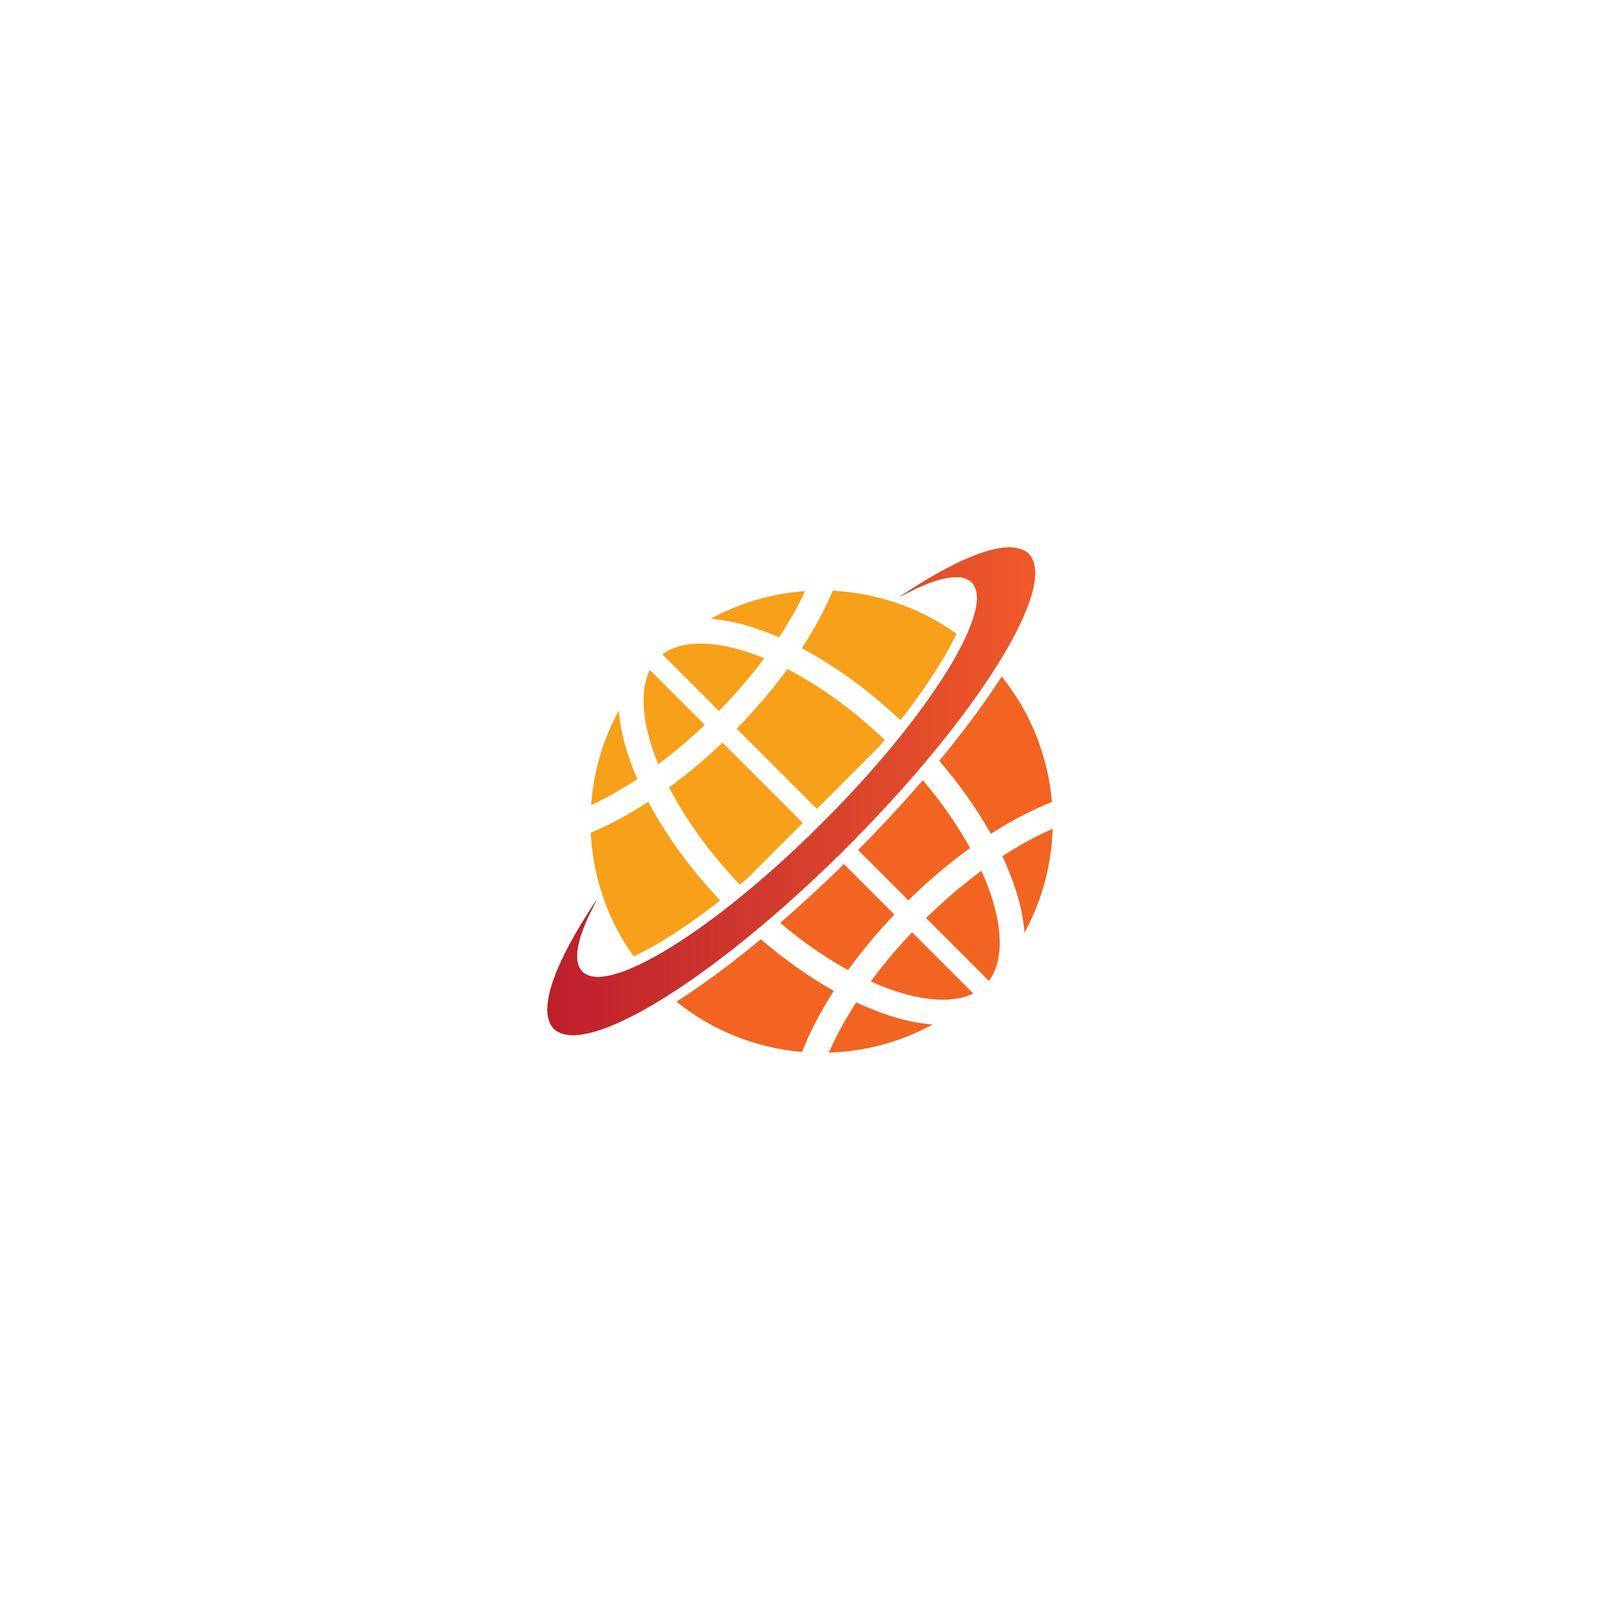 Globe logo by rnking